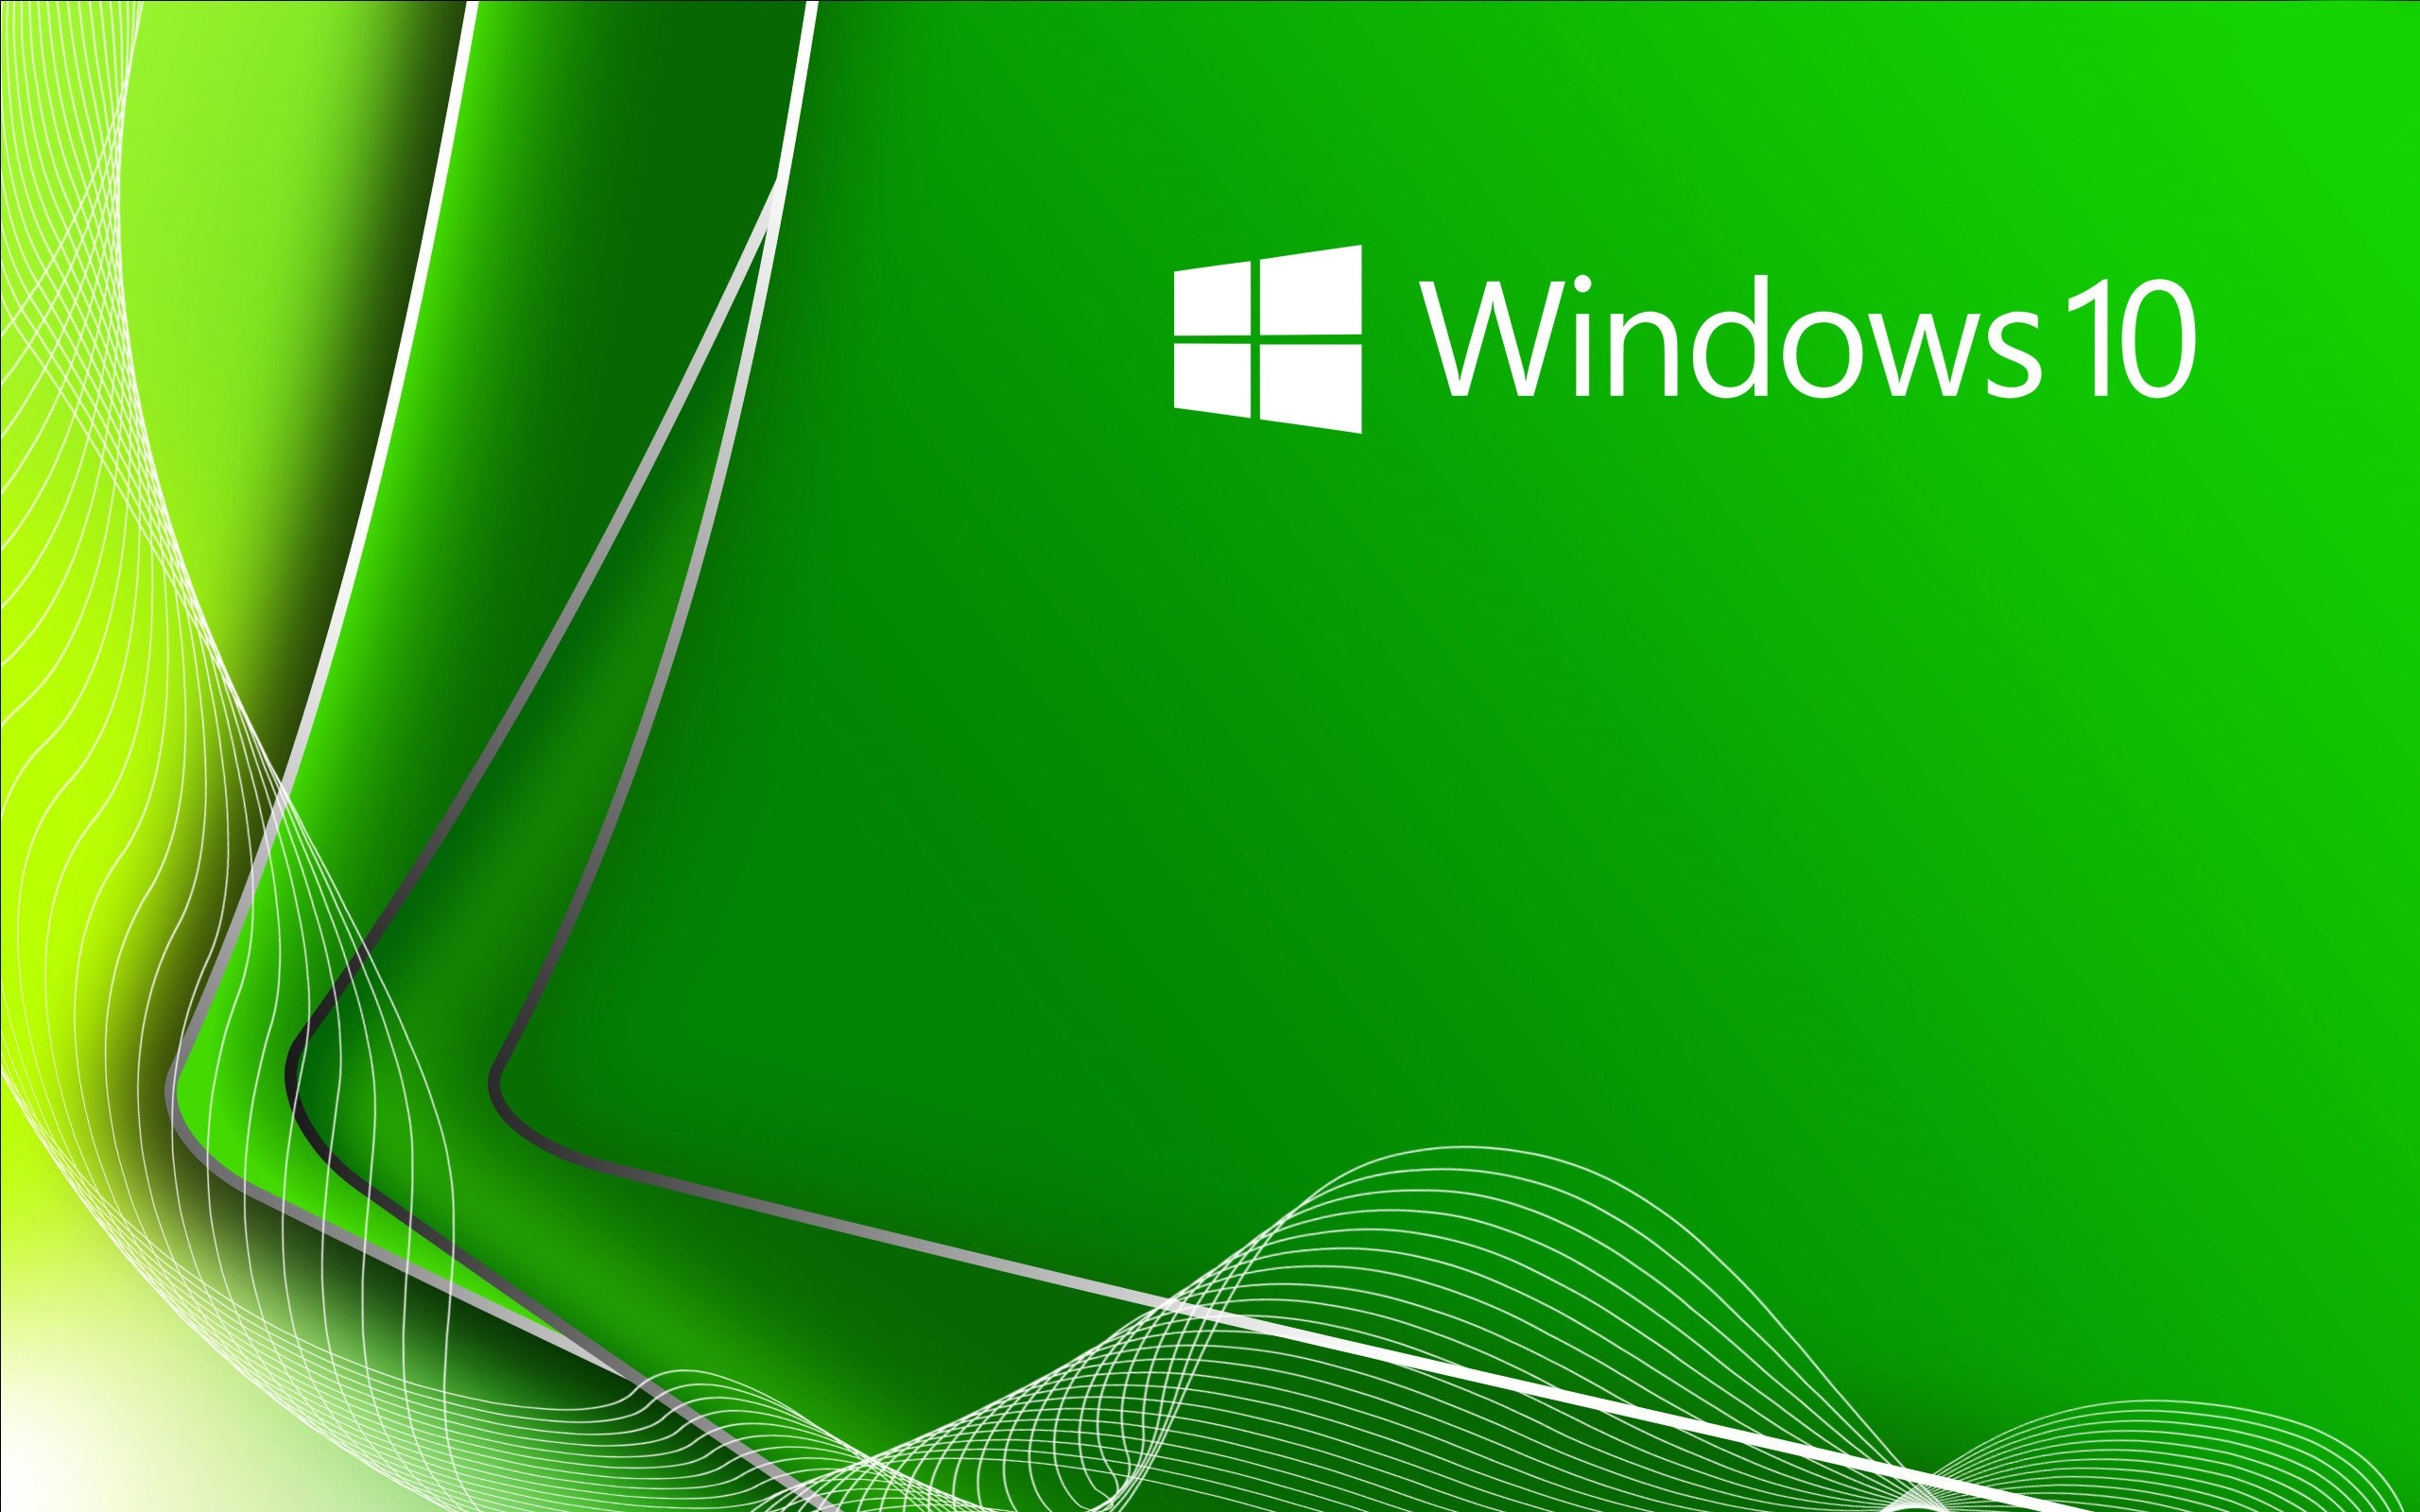 2560x1600 2D Mountains Windows 10 wallpaper | Windows 10 wallpapers | Pinterest |  Wallpaper windows 10 and Windows 10